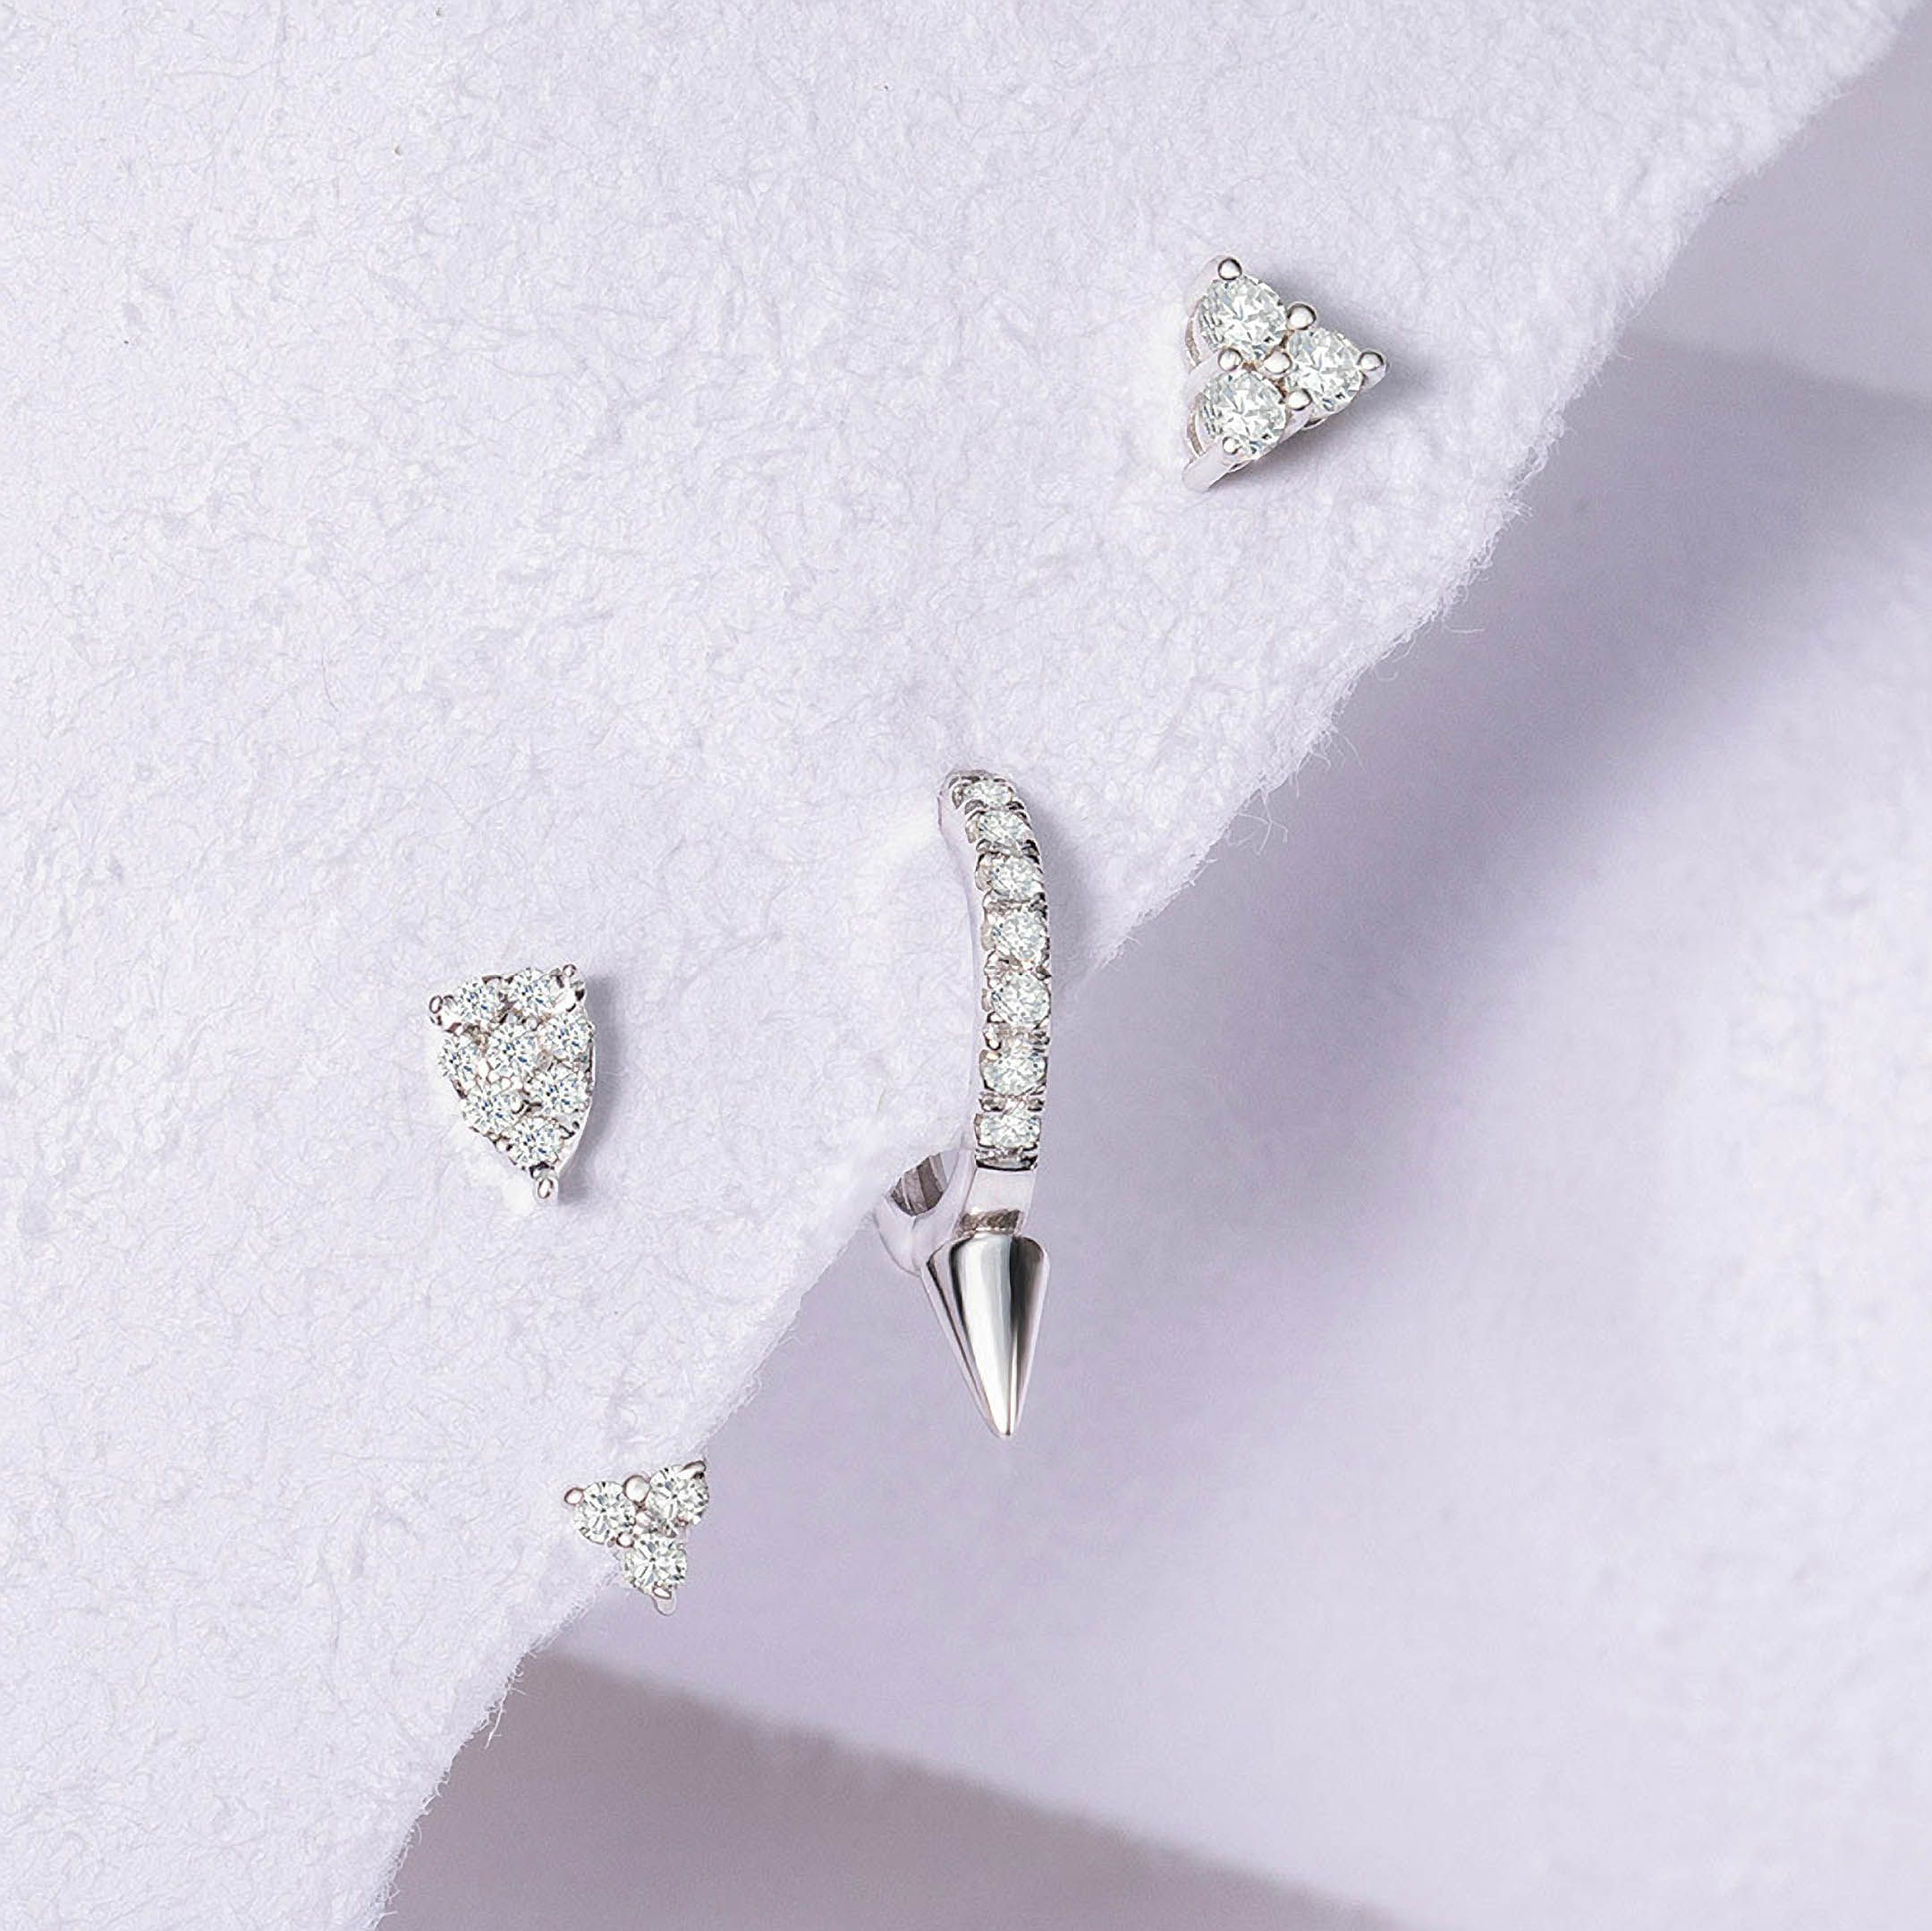 Pendiente Piercing Spike Diamonds 10 mm en Oro Blanco de 18 Kt